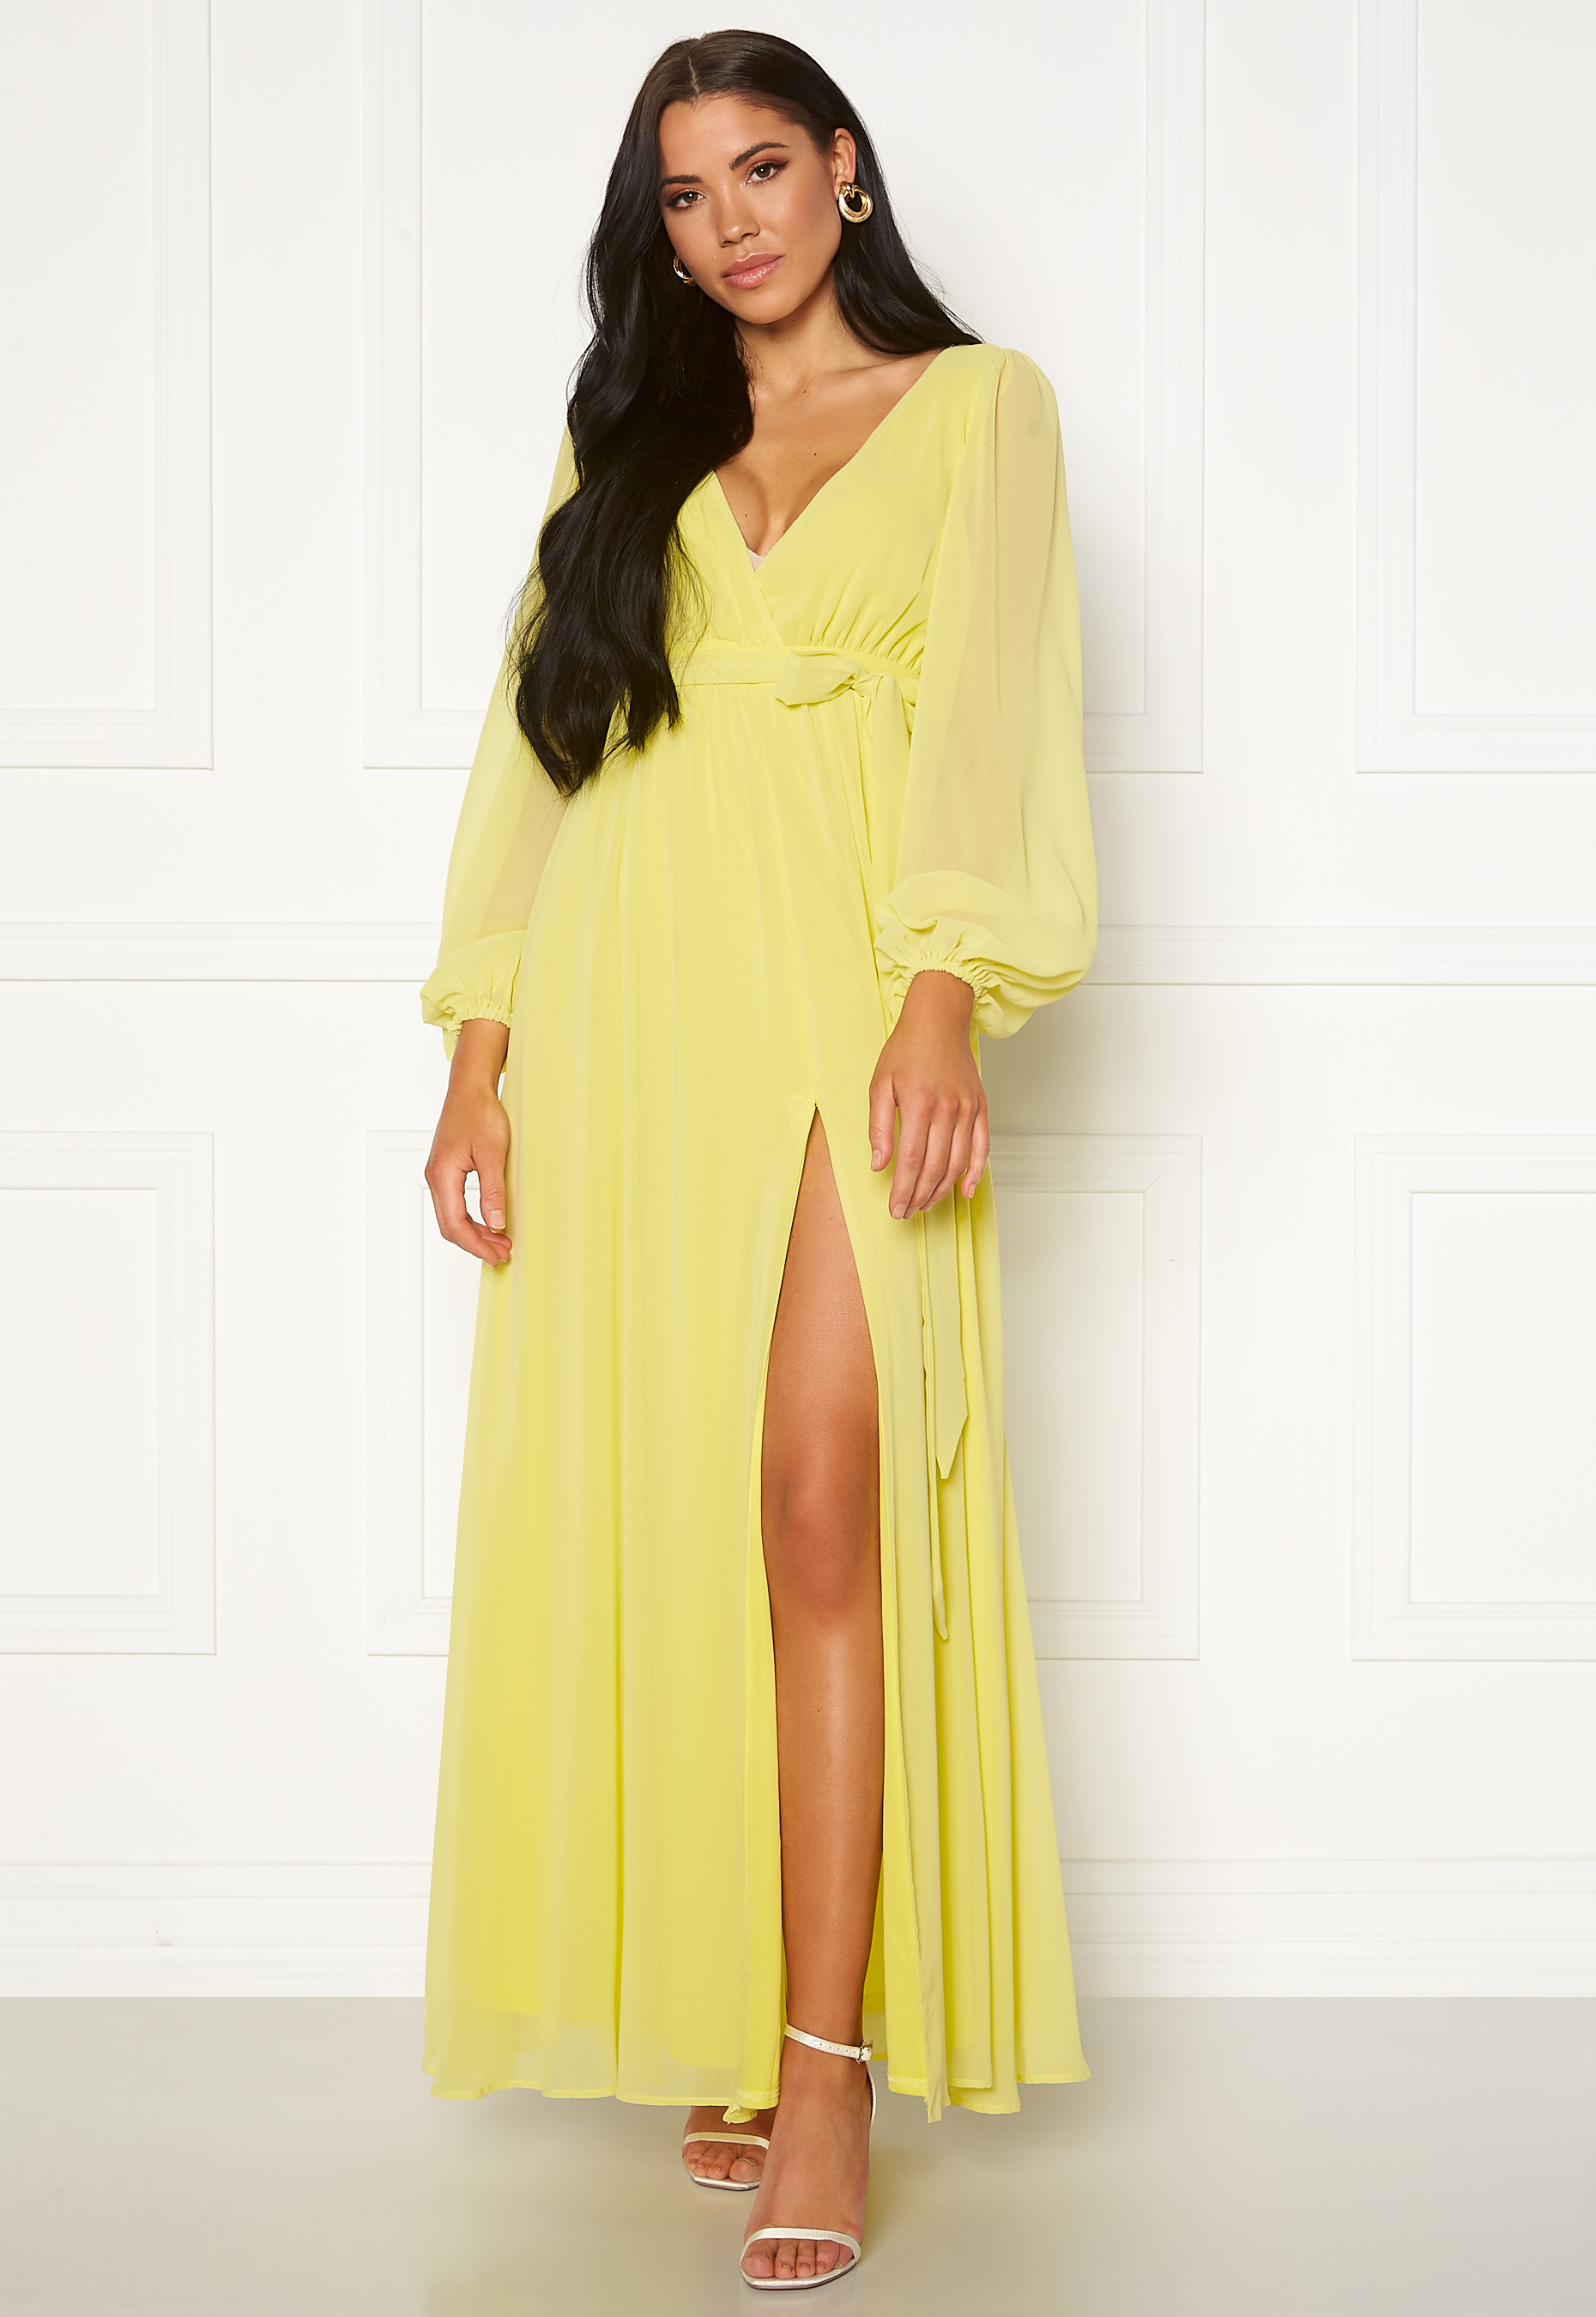 long yellow chiffon dress